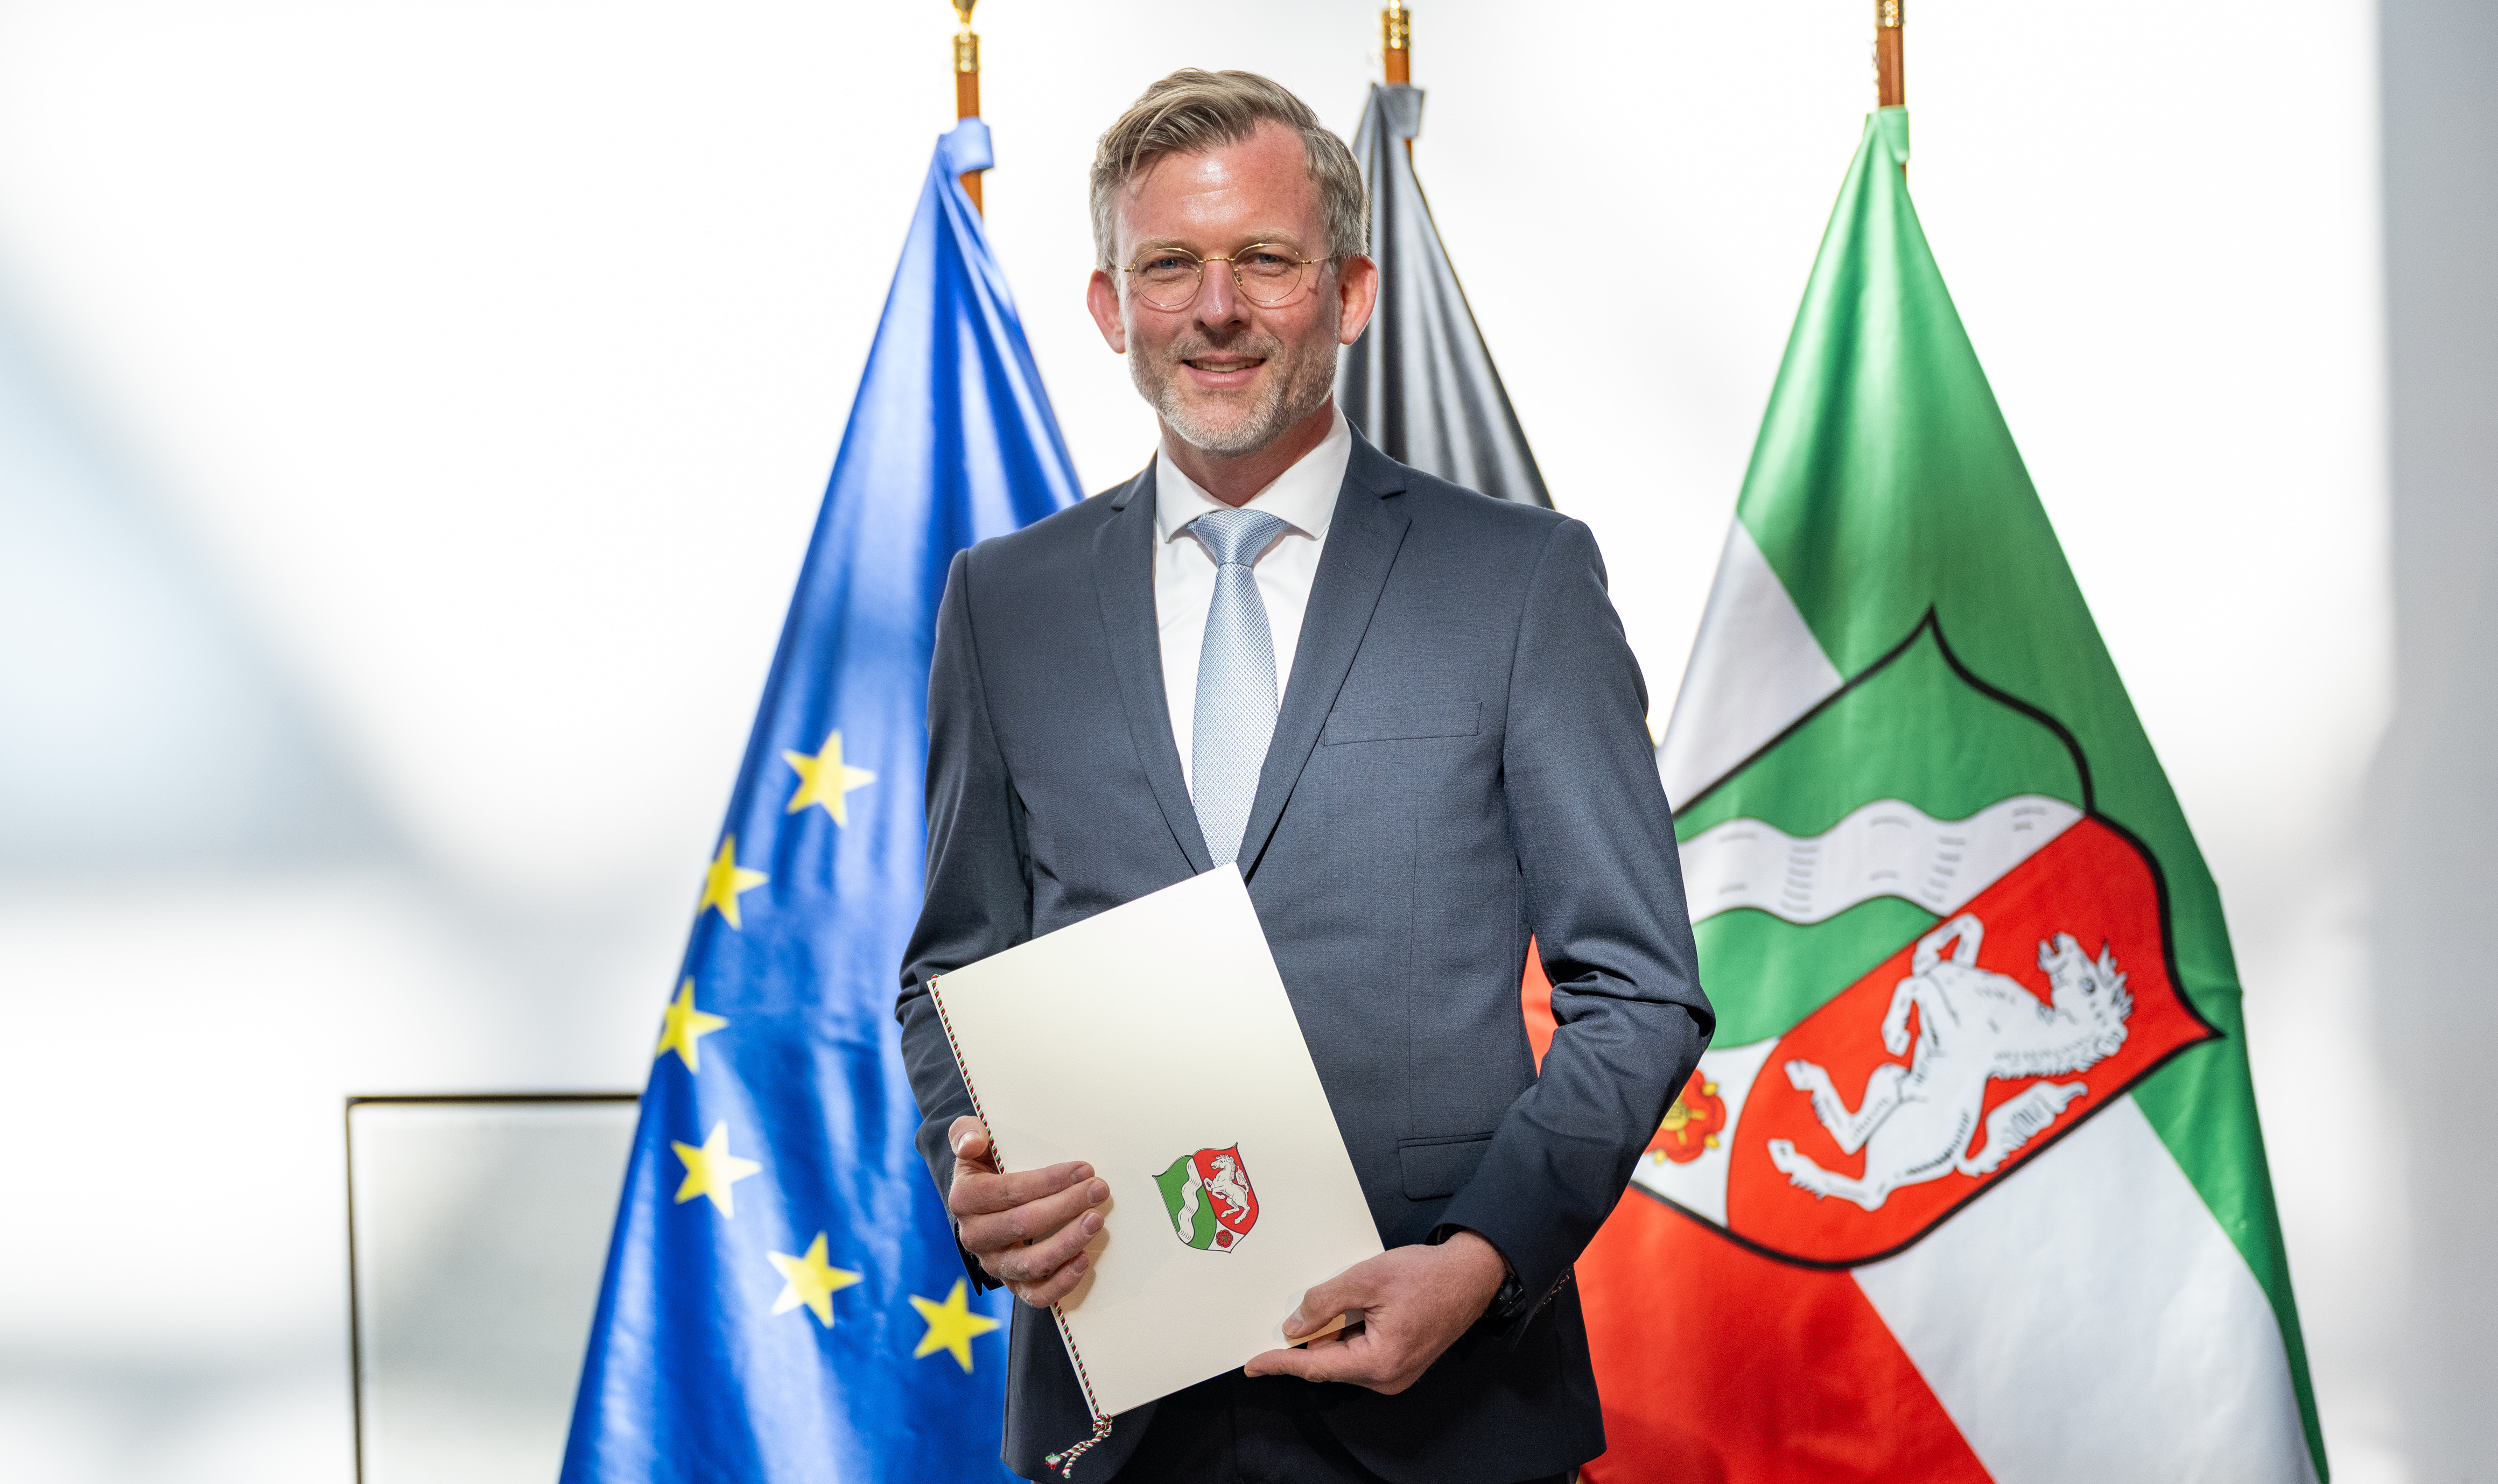 Staatssekretär Dr. Dirk Günnewig. Foto: Land NRW